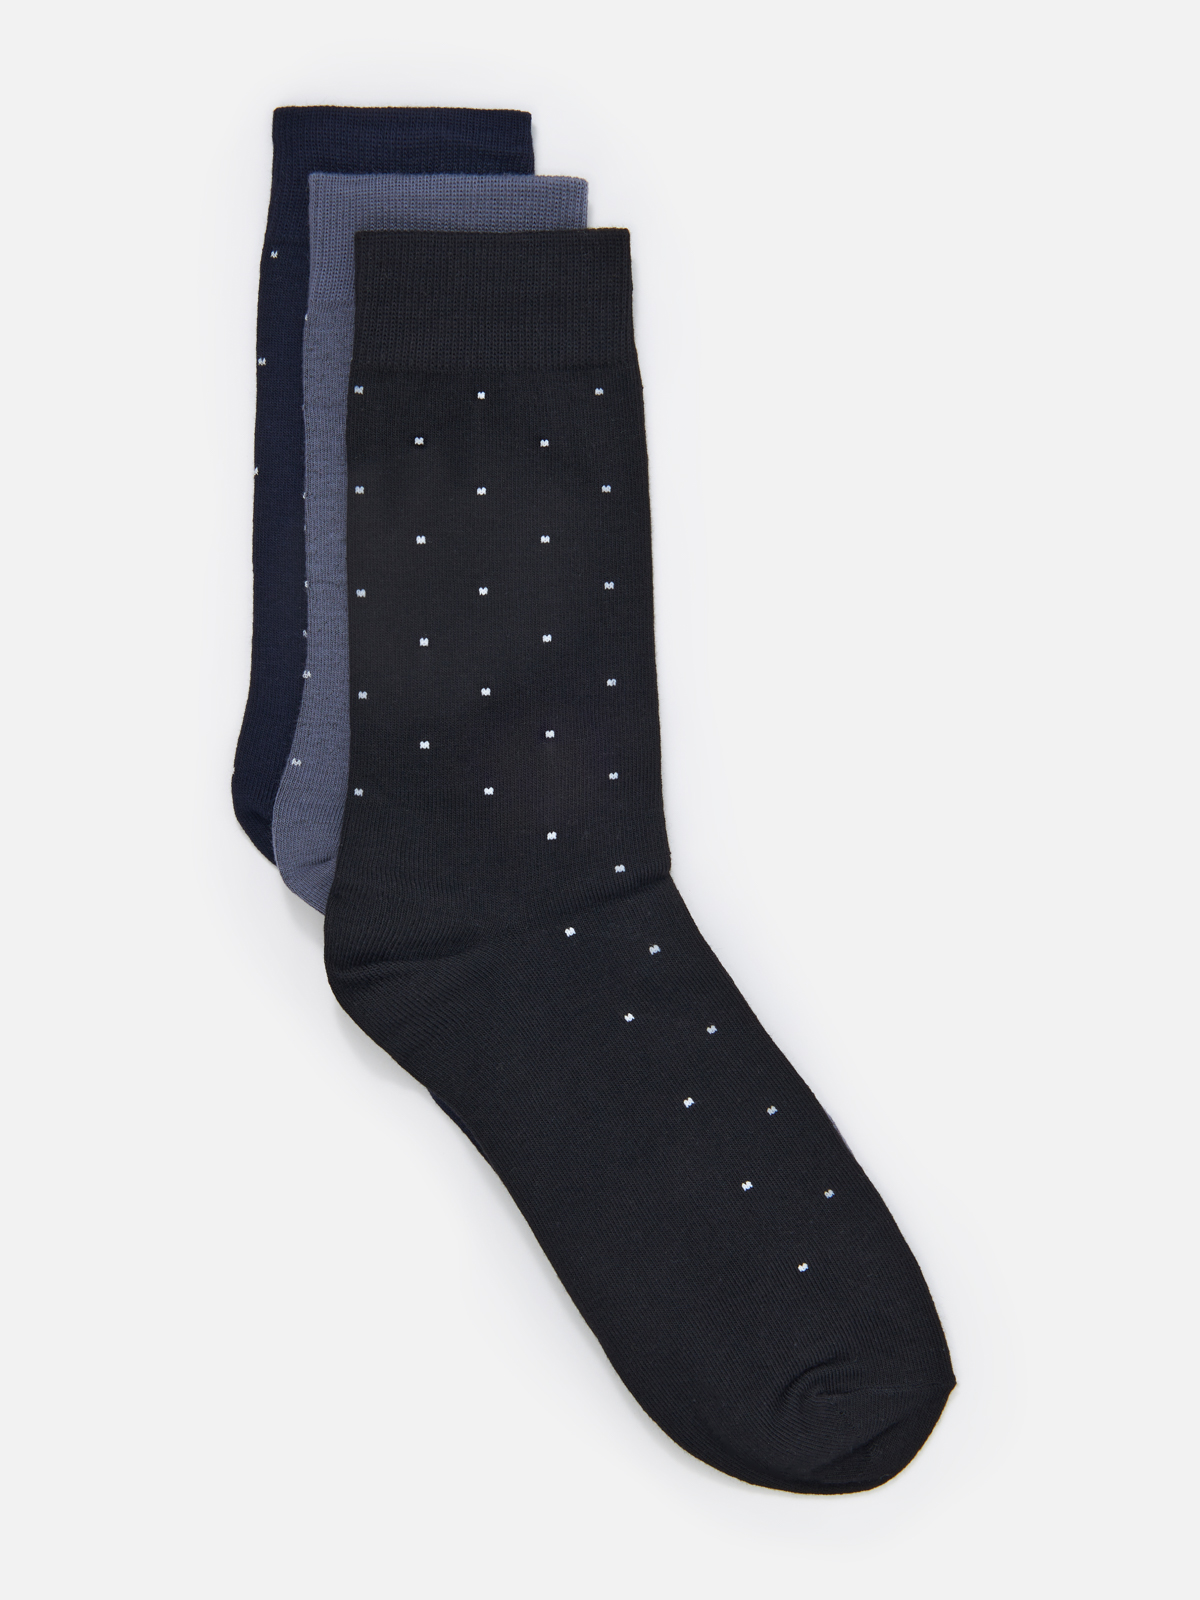 Комплект носков мужских Cotton & Quality 33003T3 разноцветных 40-43